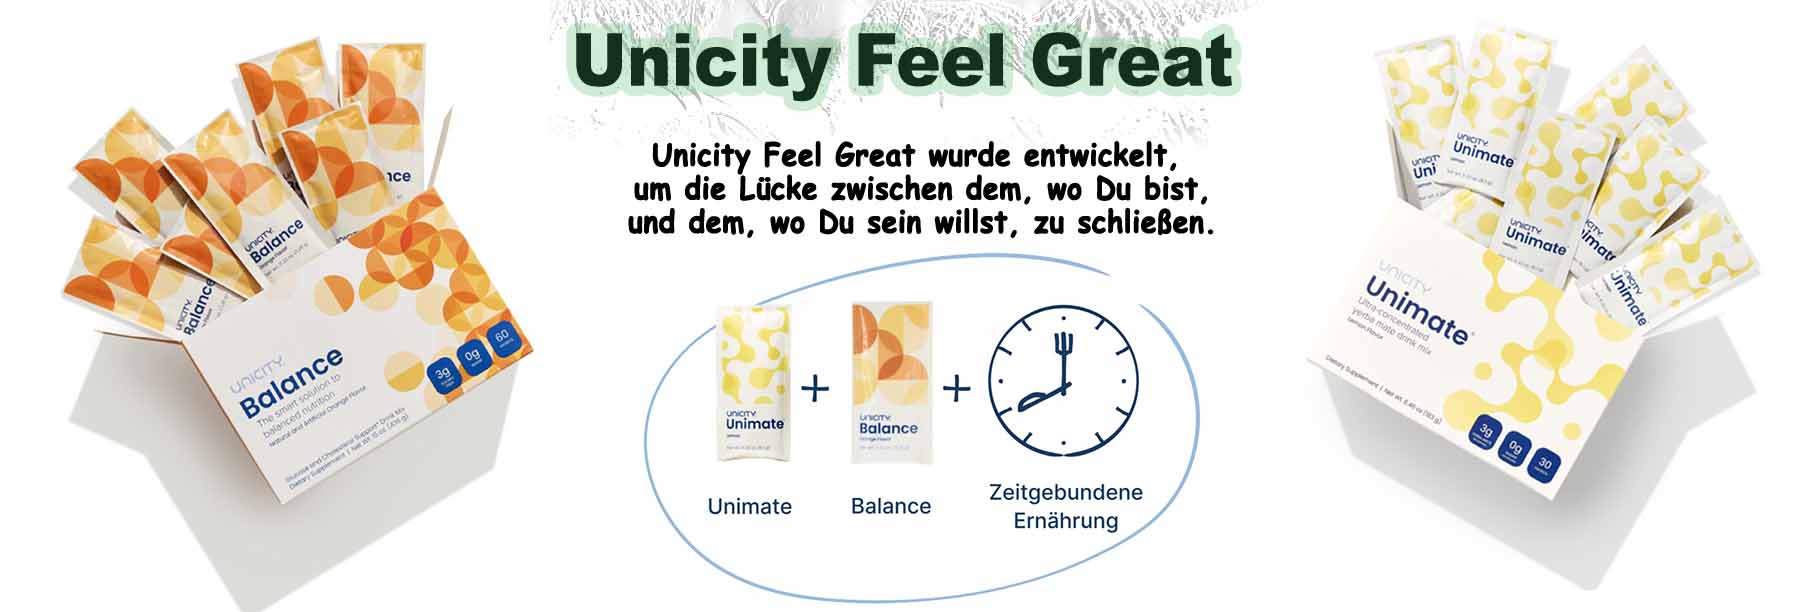 Unicity Feel Great Produktzusammenstellung